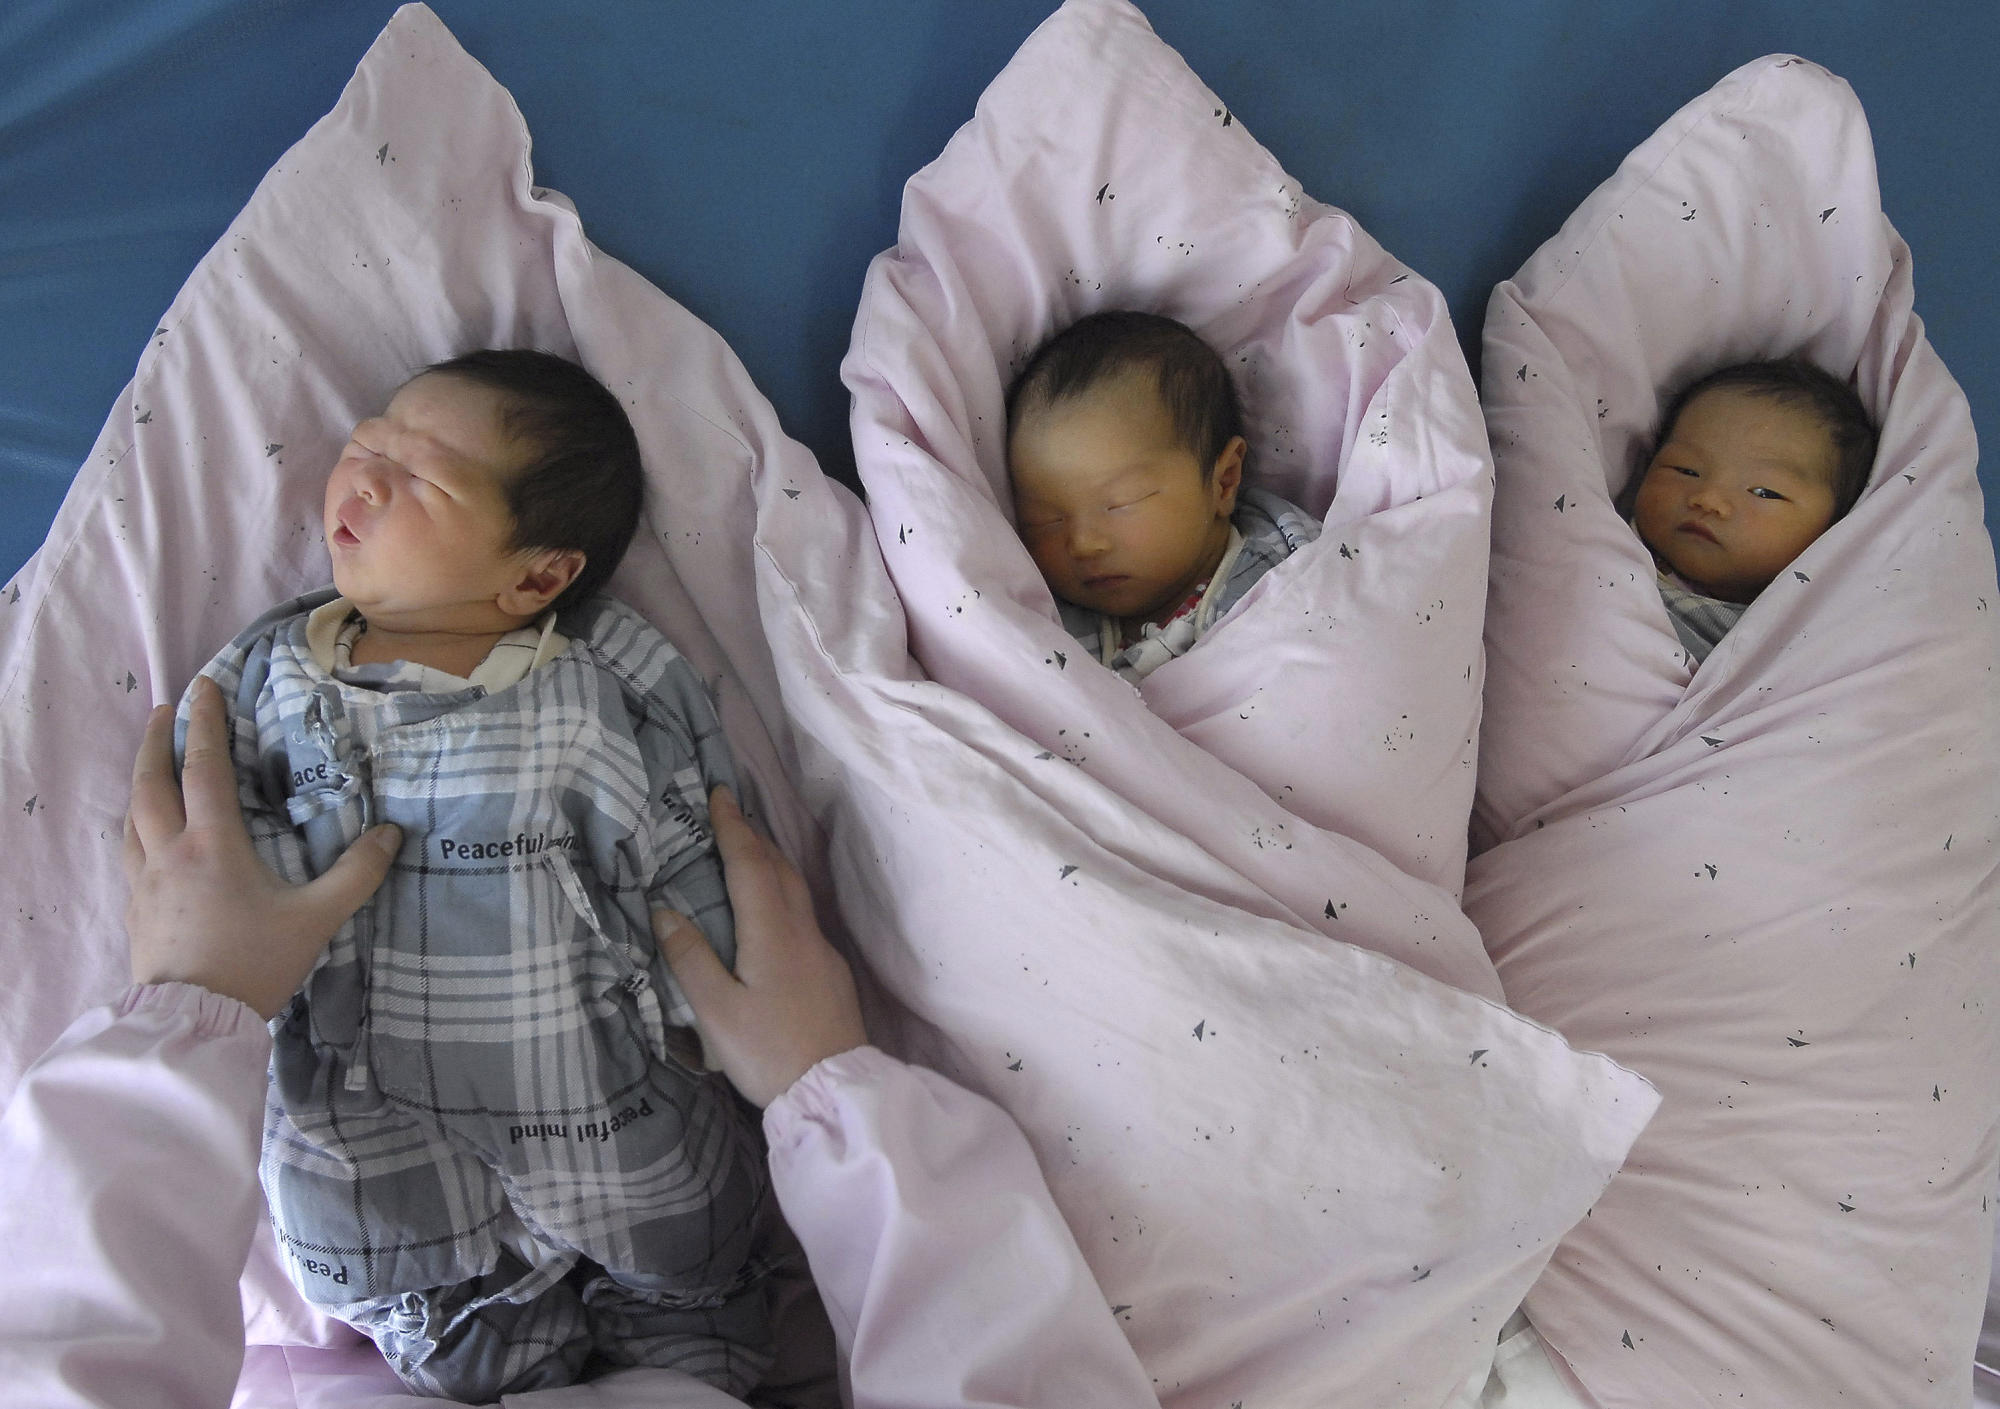 الصين تسمح للأزواج بإنجاب الطفل الثالث